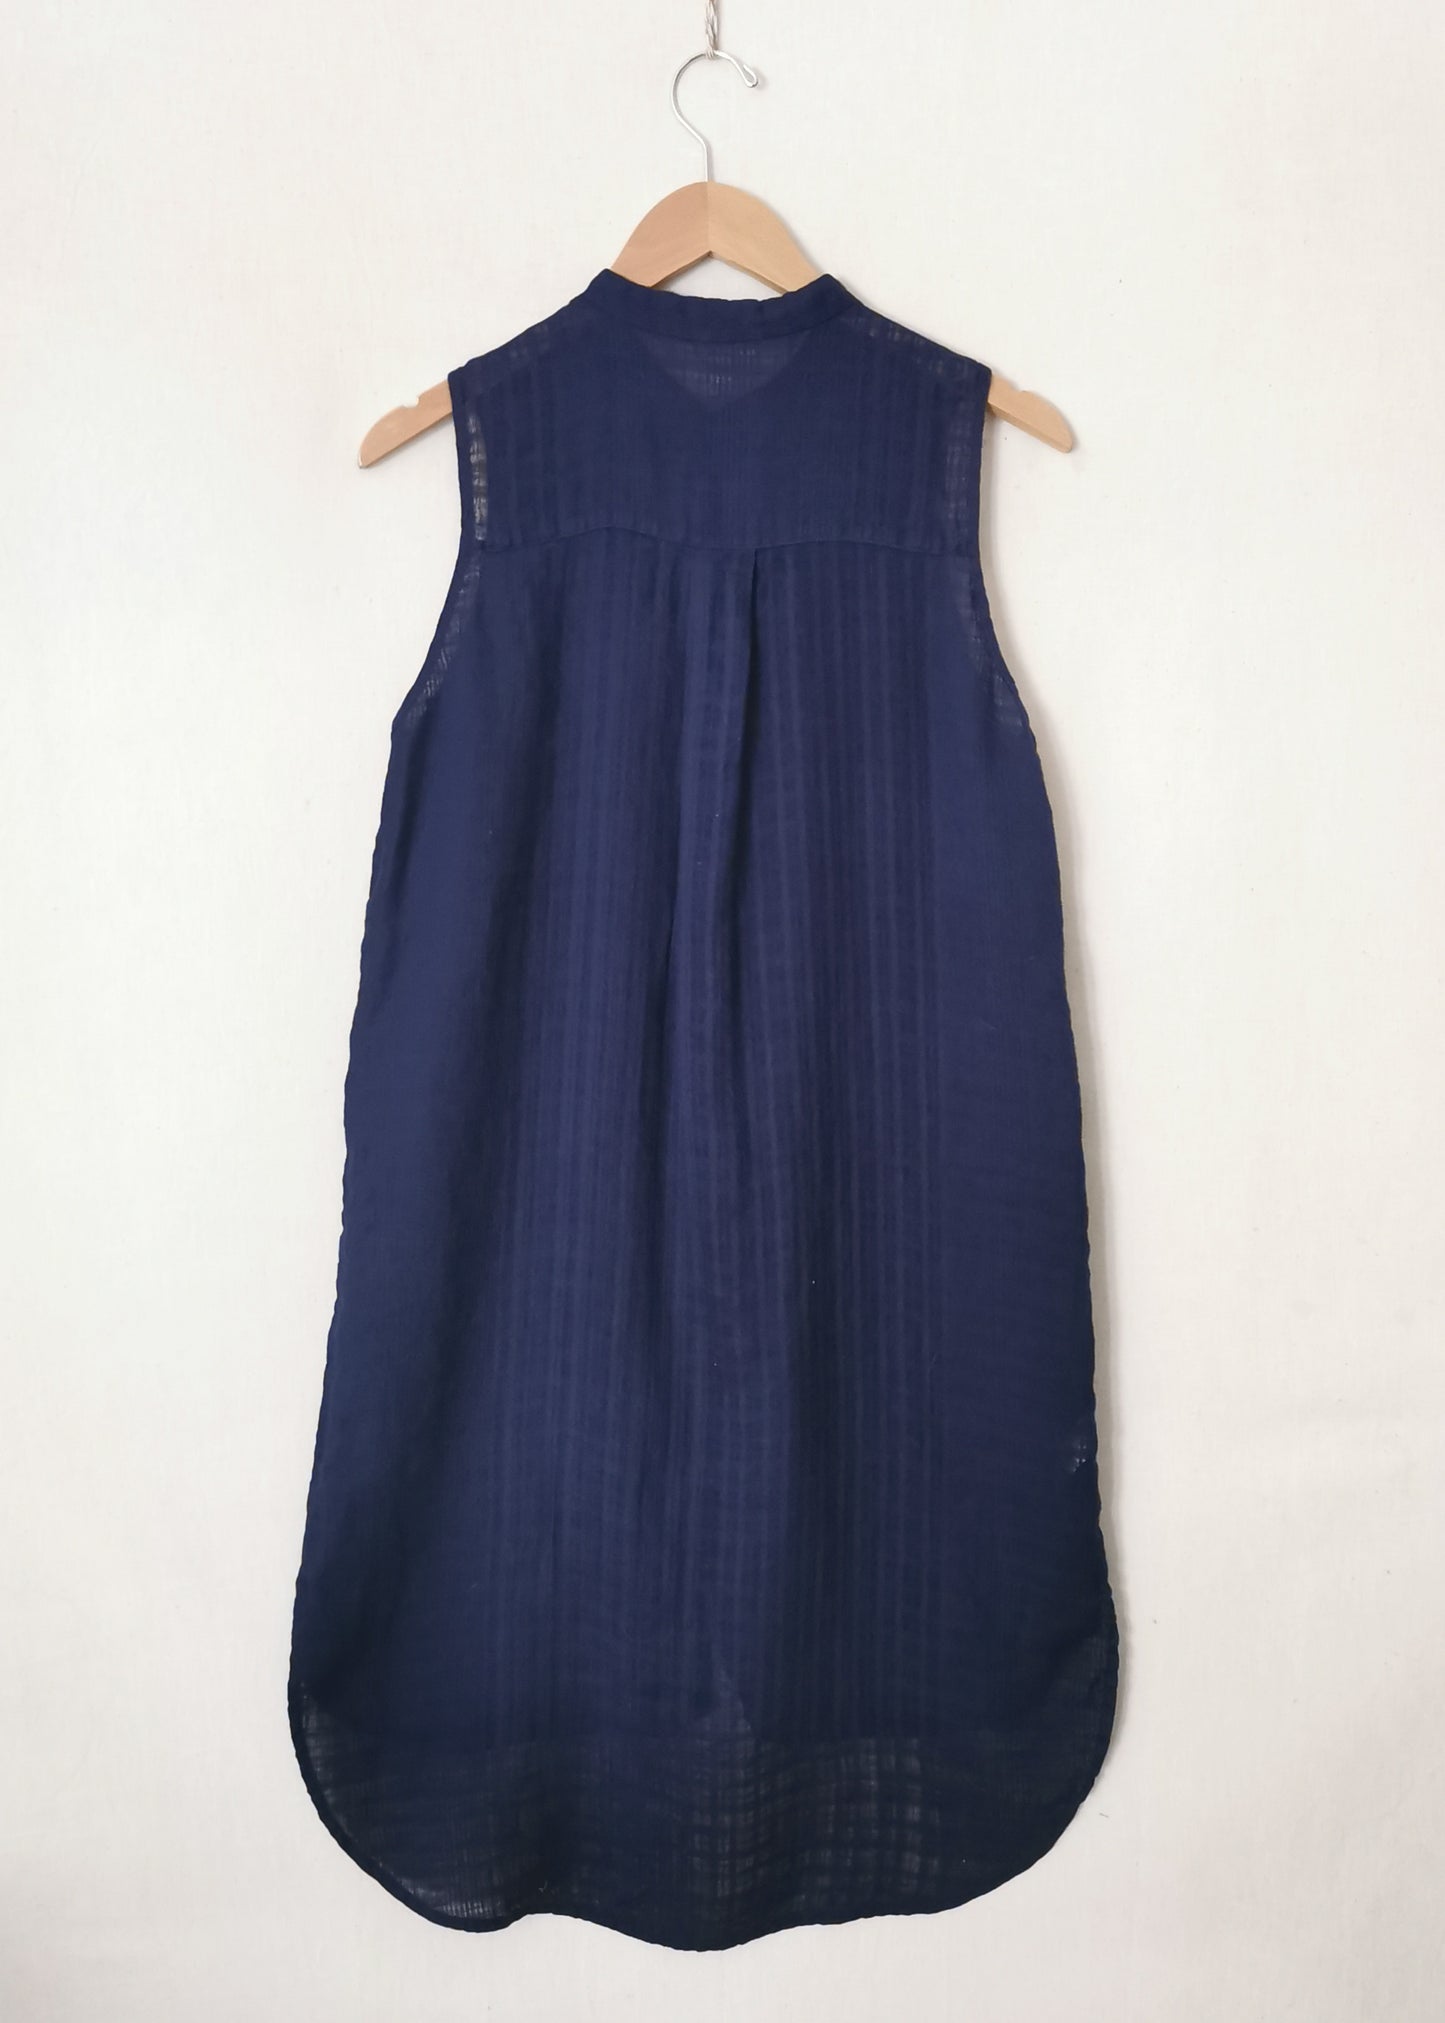 Eileen Fisher Linen Long Shirt (S)